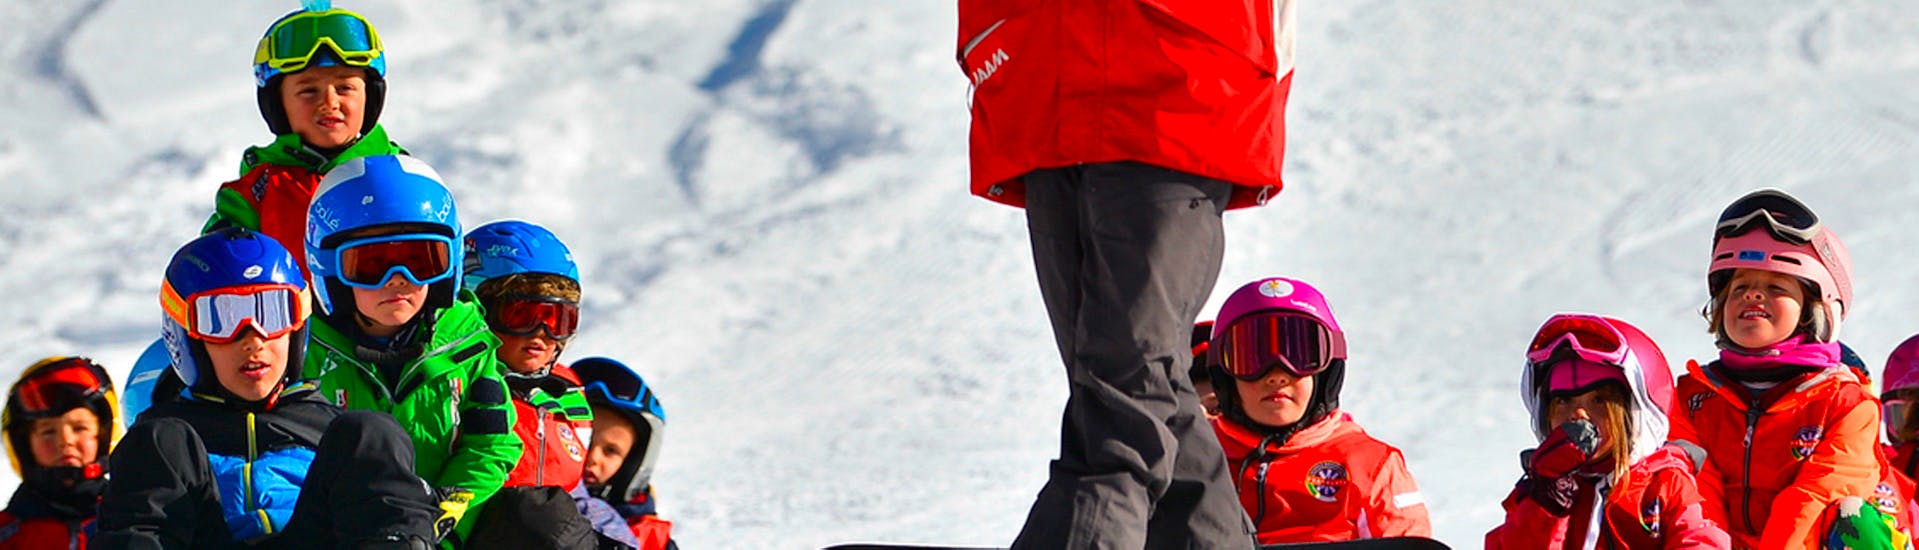 Lezioni di snowboard per bambini (5-15 anni) per snowboarder intermedi.